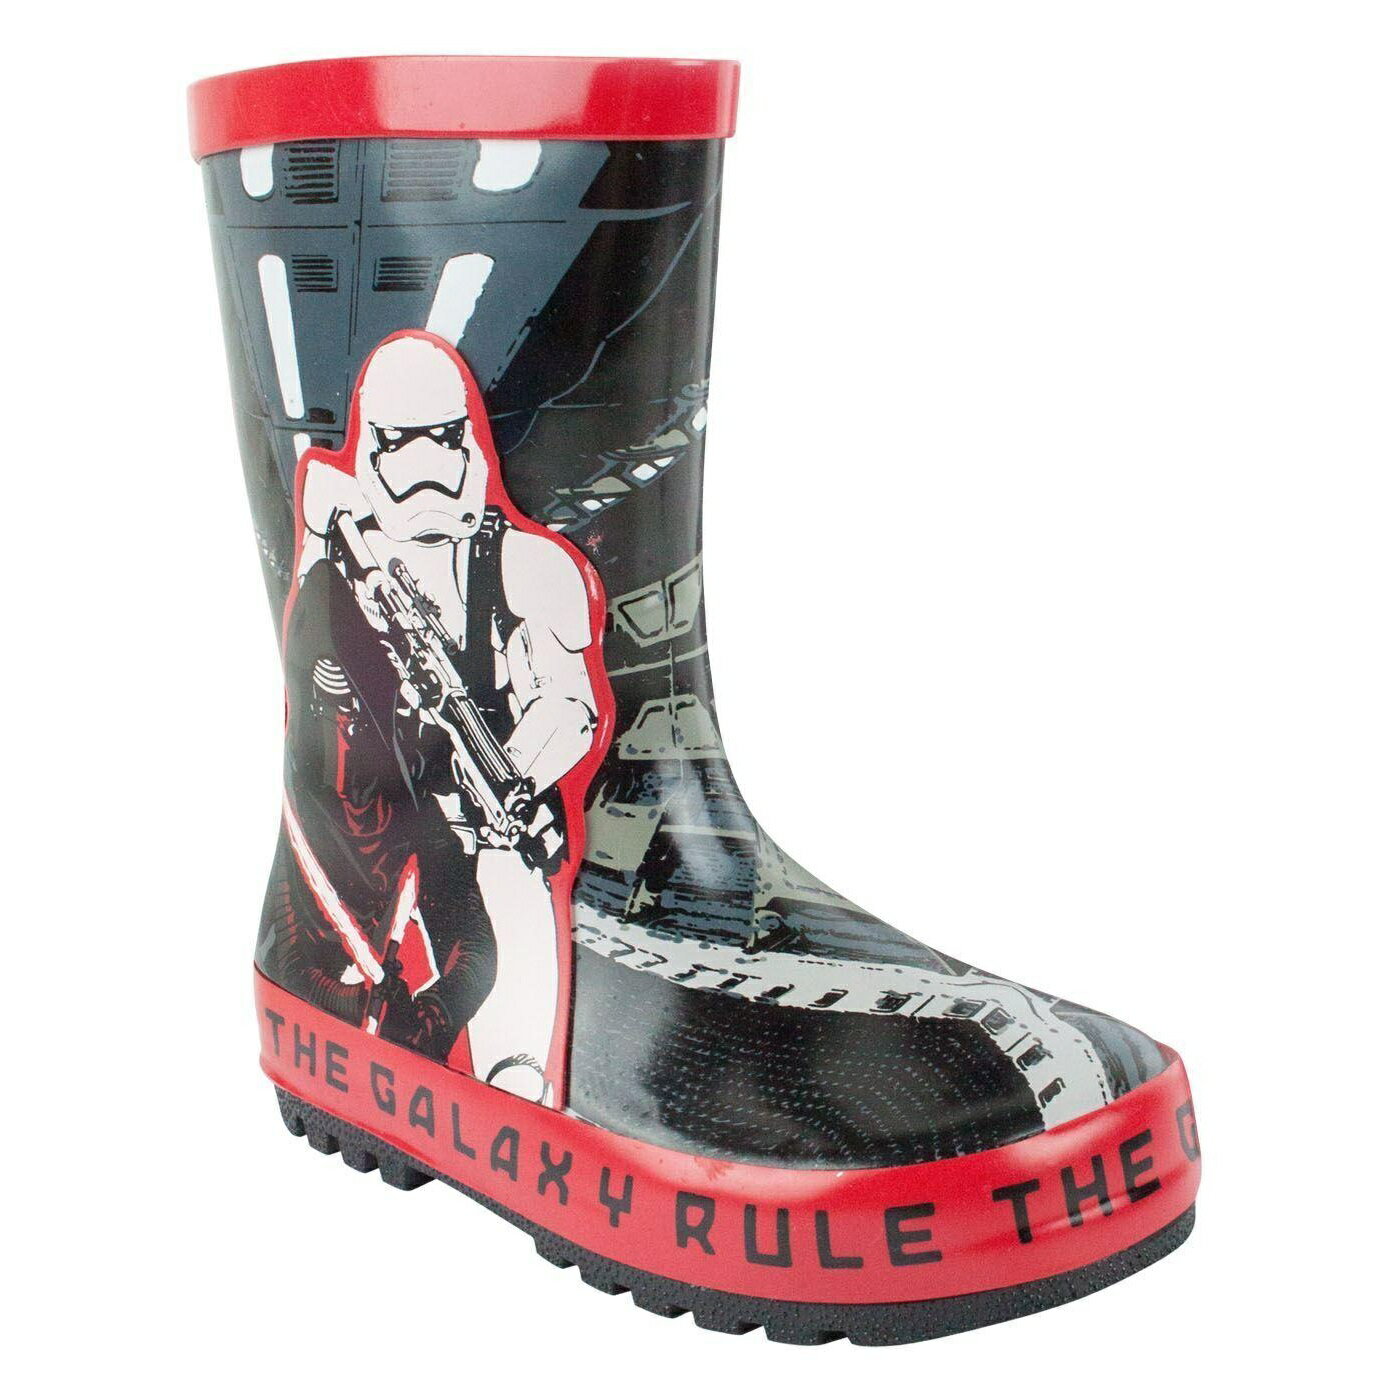 (スターウォーズ) Star Wars オフィシャル商品 キッズ・子供 Rule The Galaxy 長靴 カイロ・レン 子供靴 レインブーツ ウェリントンブーツ 【海外通販】